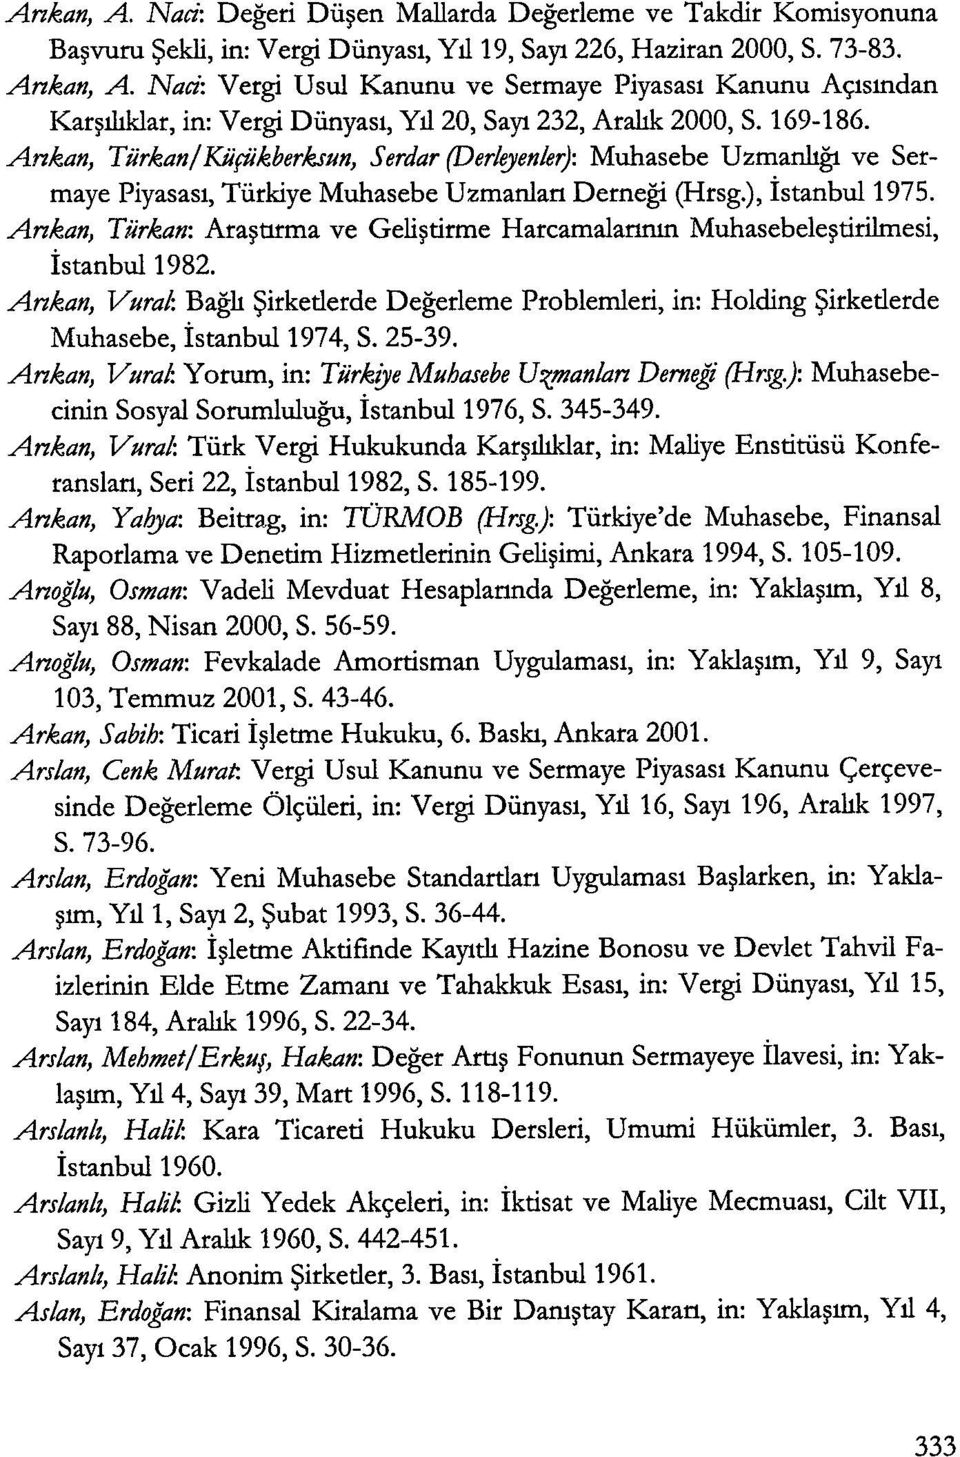 Ankan, Tiirkan/Kiifiikberkslln, Serdar (Derleyenler): Muhasebe Uzmanhgt ve Sermaye Piyasasl, Tiirkiye Muhasebe Uzmanlan Demegi (Hrsg.), istanbul 1975.